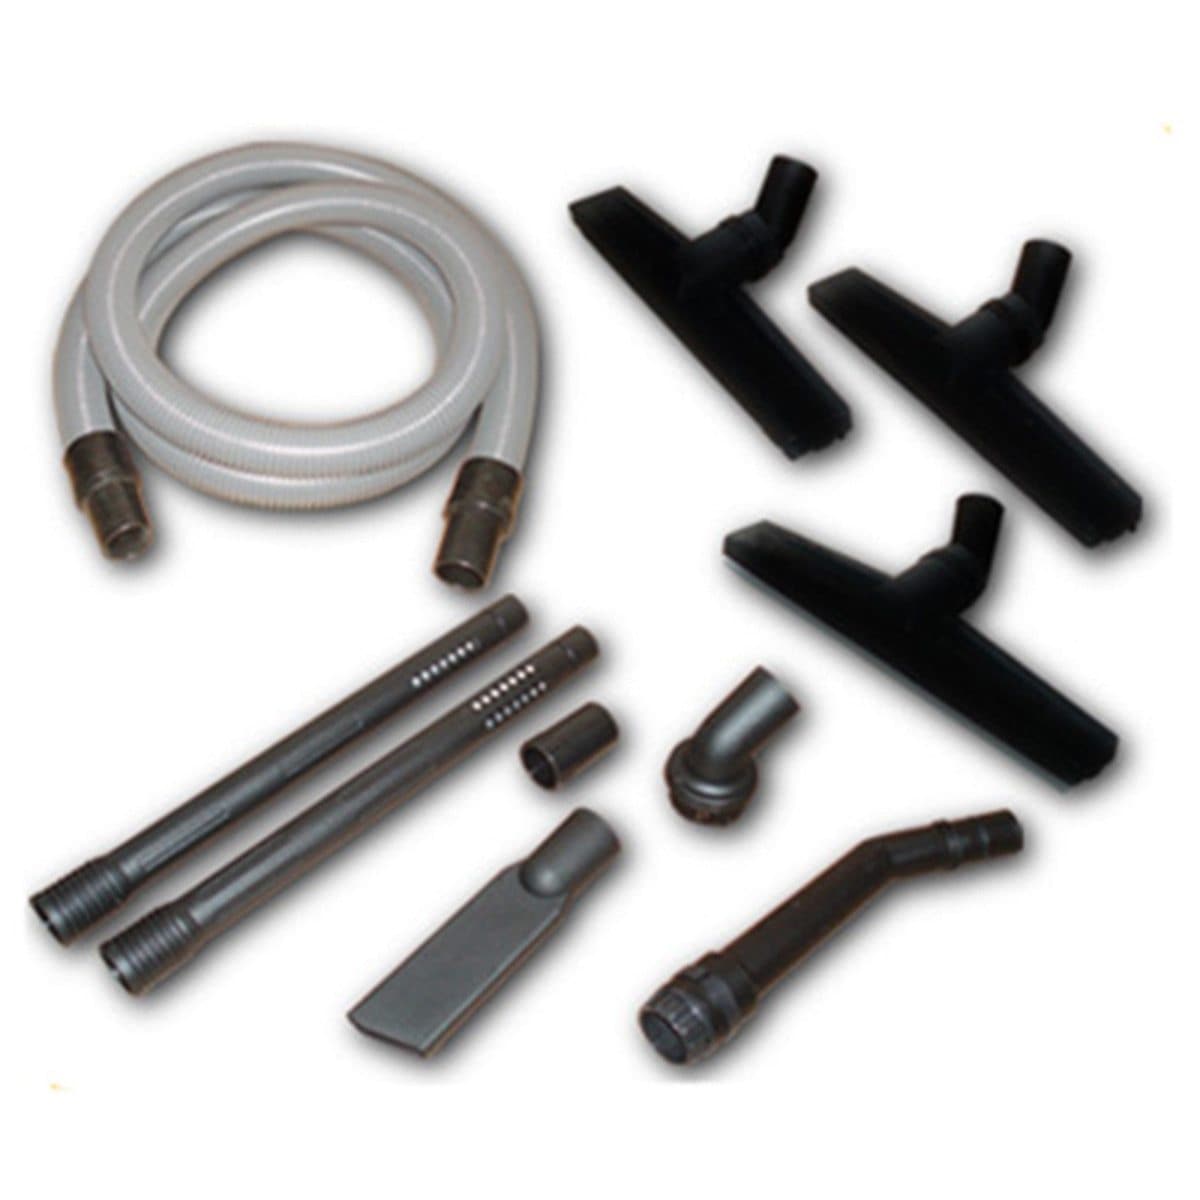 Koblenz D/P Tools Kit for Wet/Dry Vacuums - Koblenz